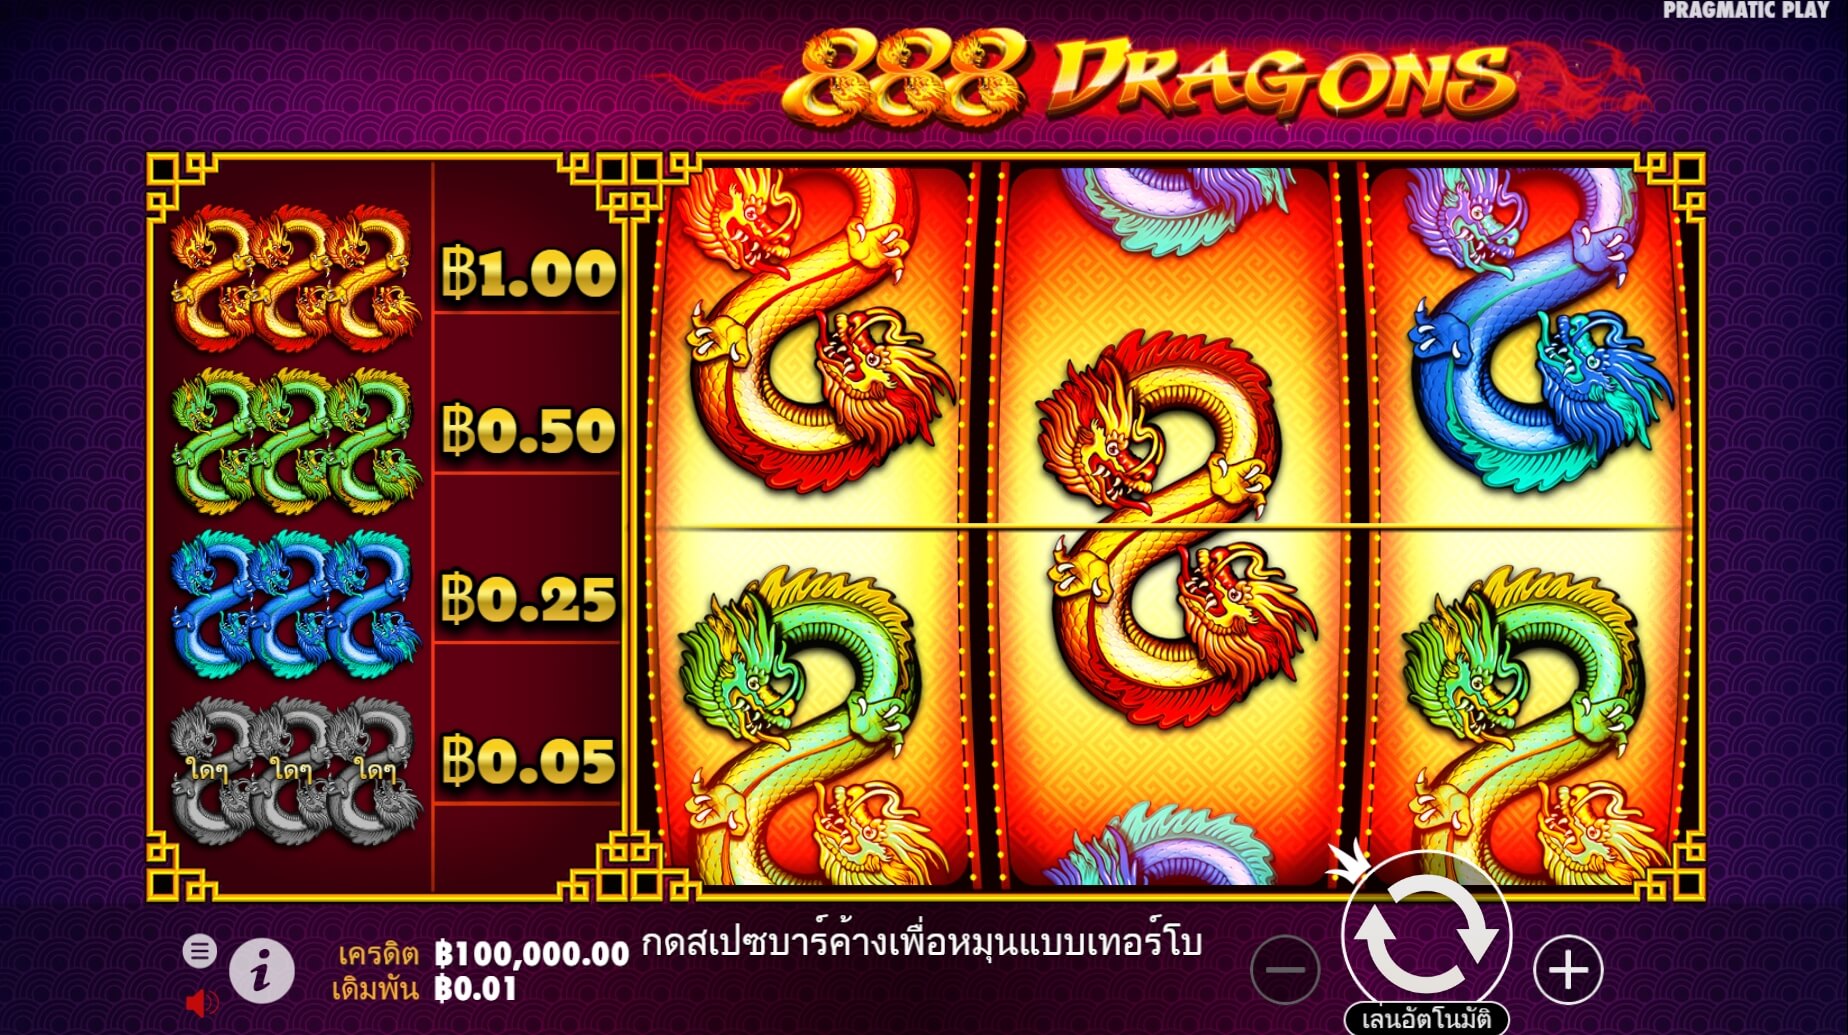 pragmatic play ฟรีเครดิต 888 Dragons Superslot เครดิตฟรี 300